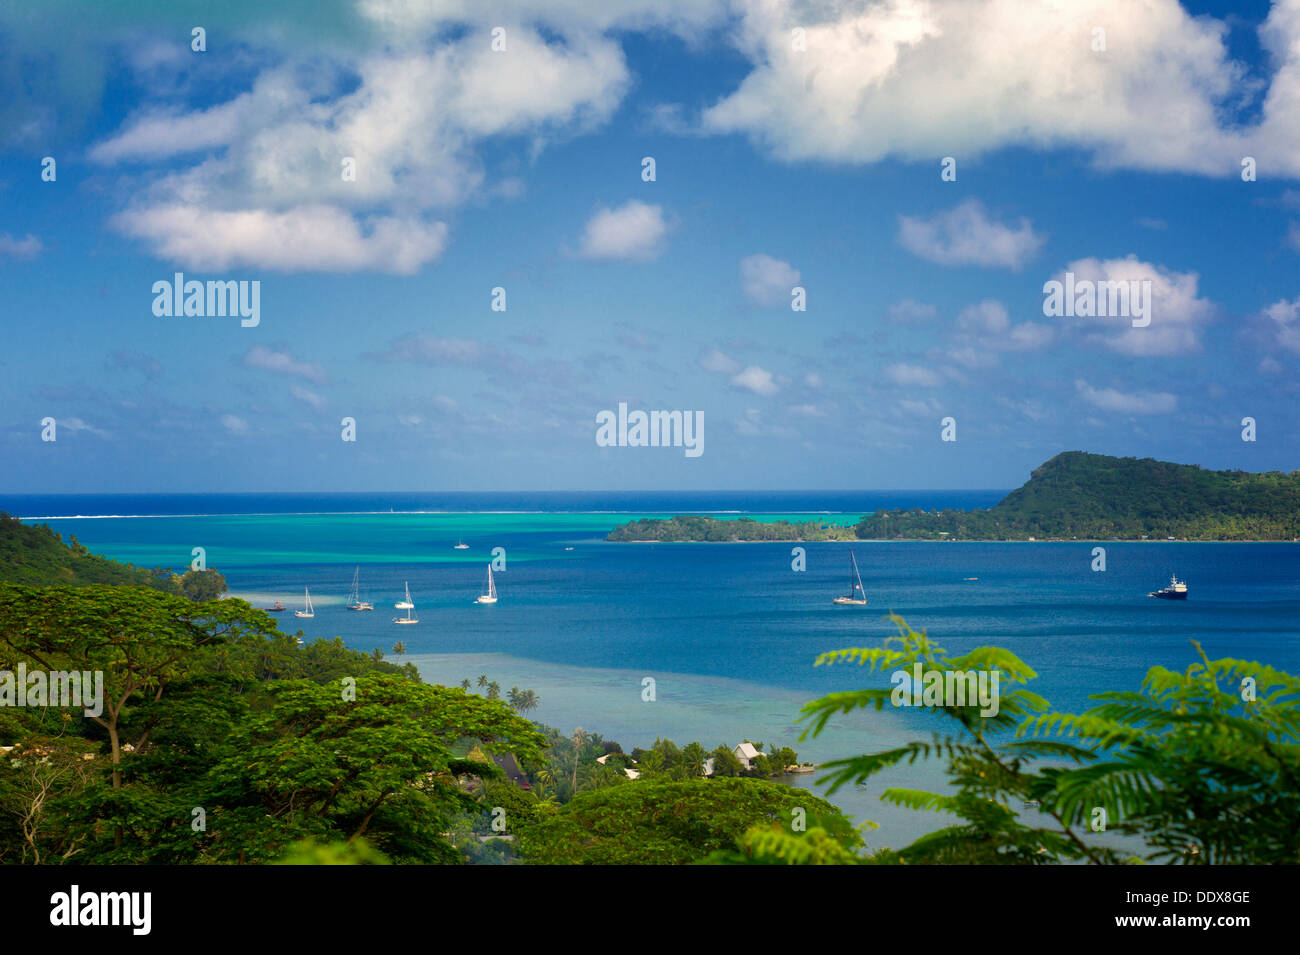 Boats in bay. Bora Bora. French Polynesia Stock Photo